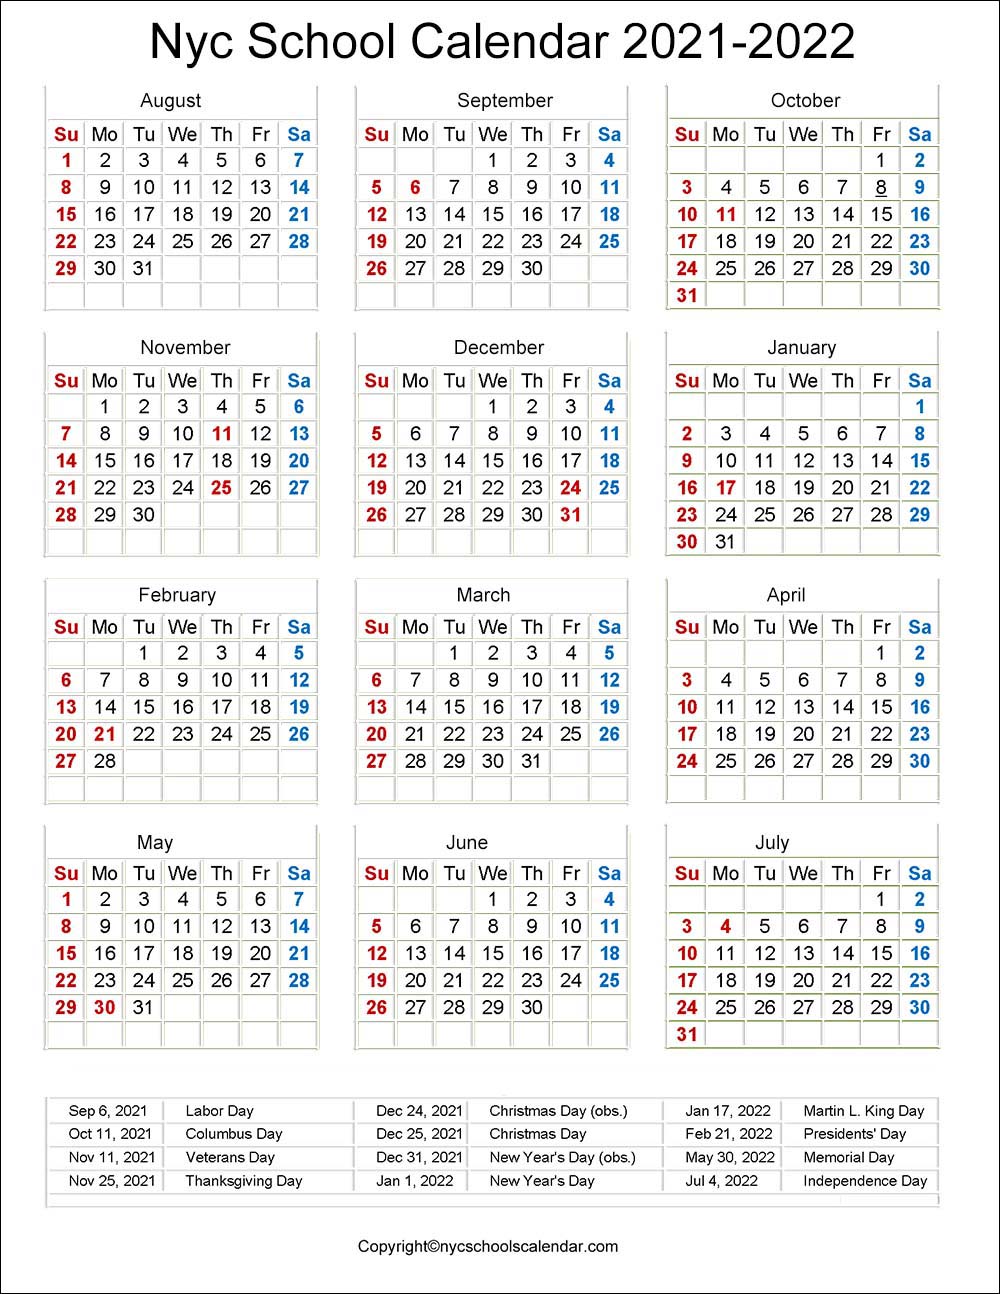 Nyc Board Of Education Calendar 2022 ❤️Nyc School Holidays Calendar 2021-2022 ✓